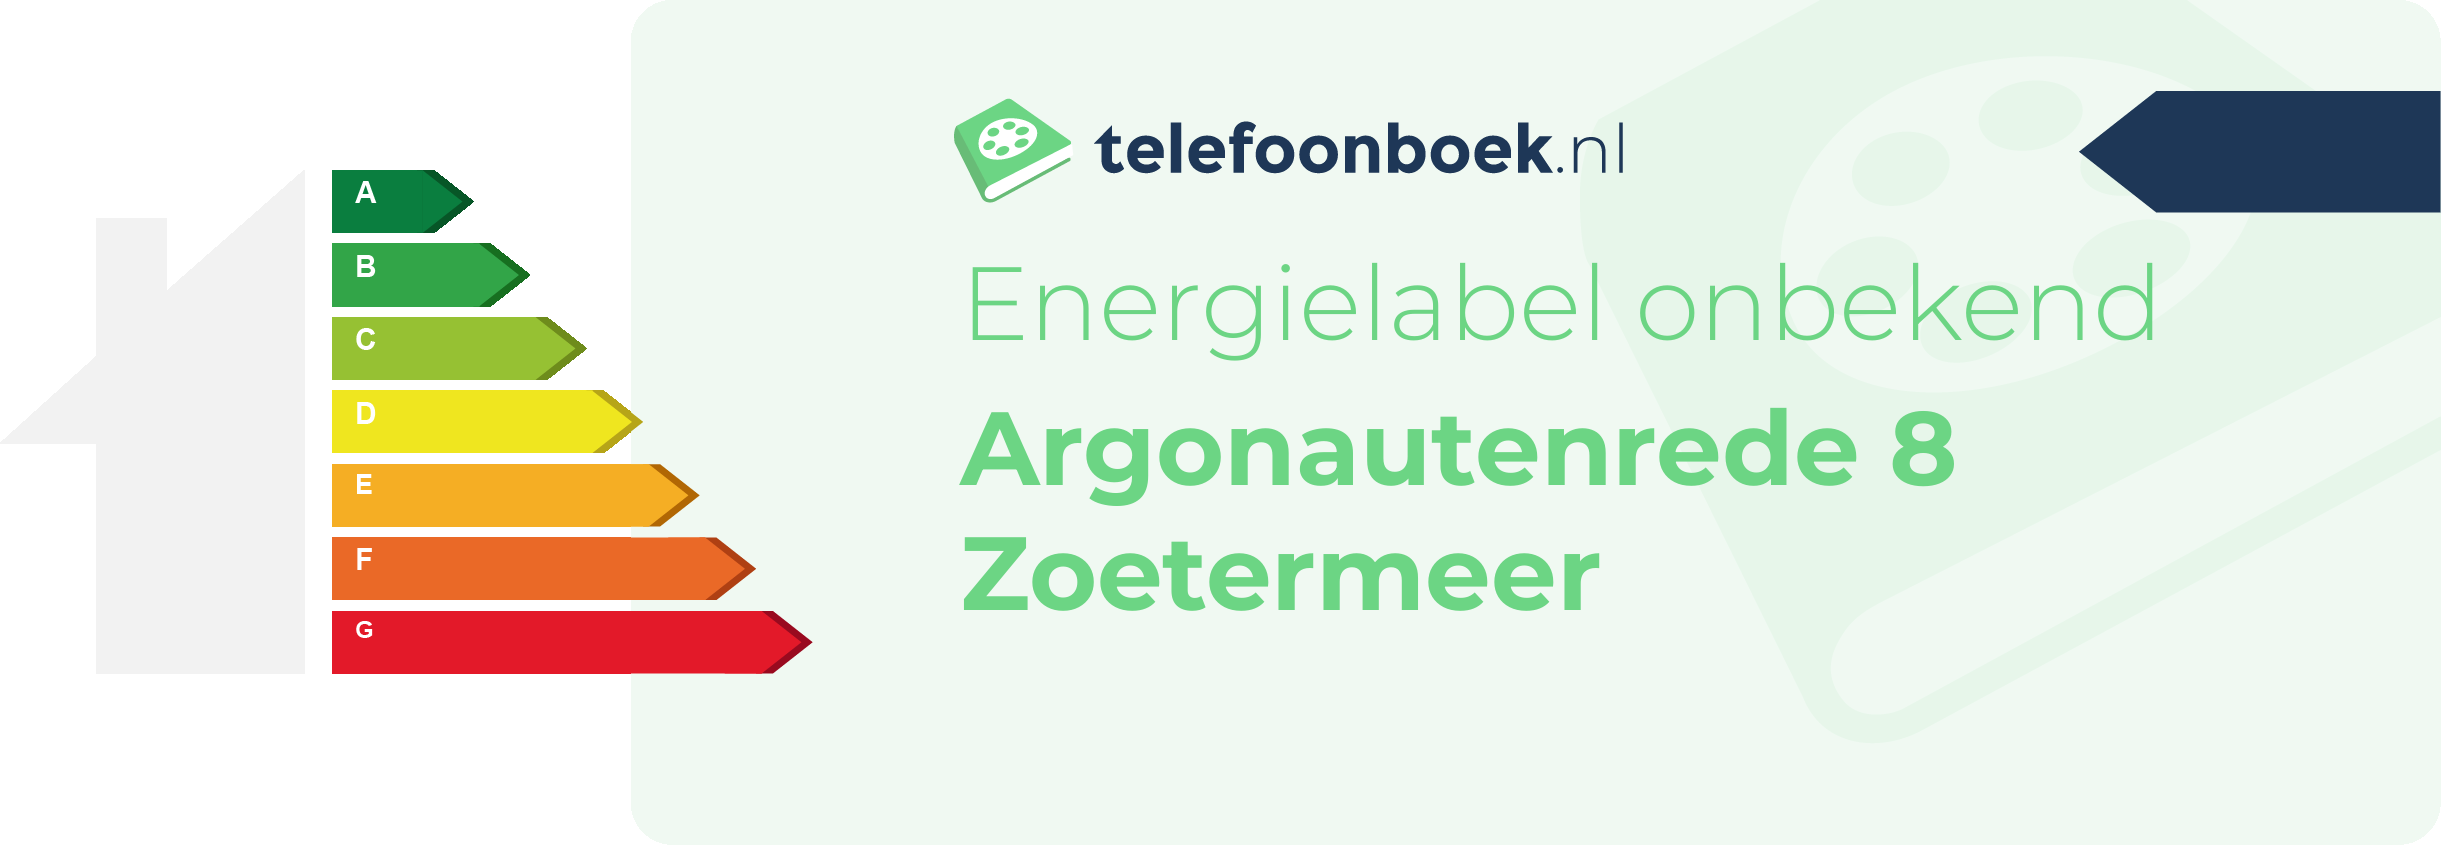 Energielabel Argonautenrede 8 Zoetermeer